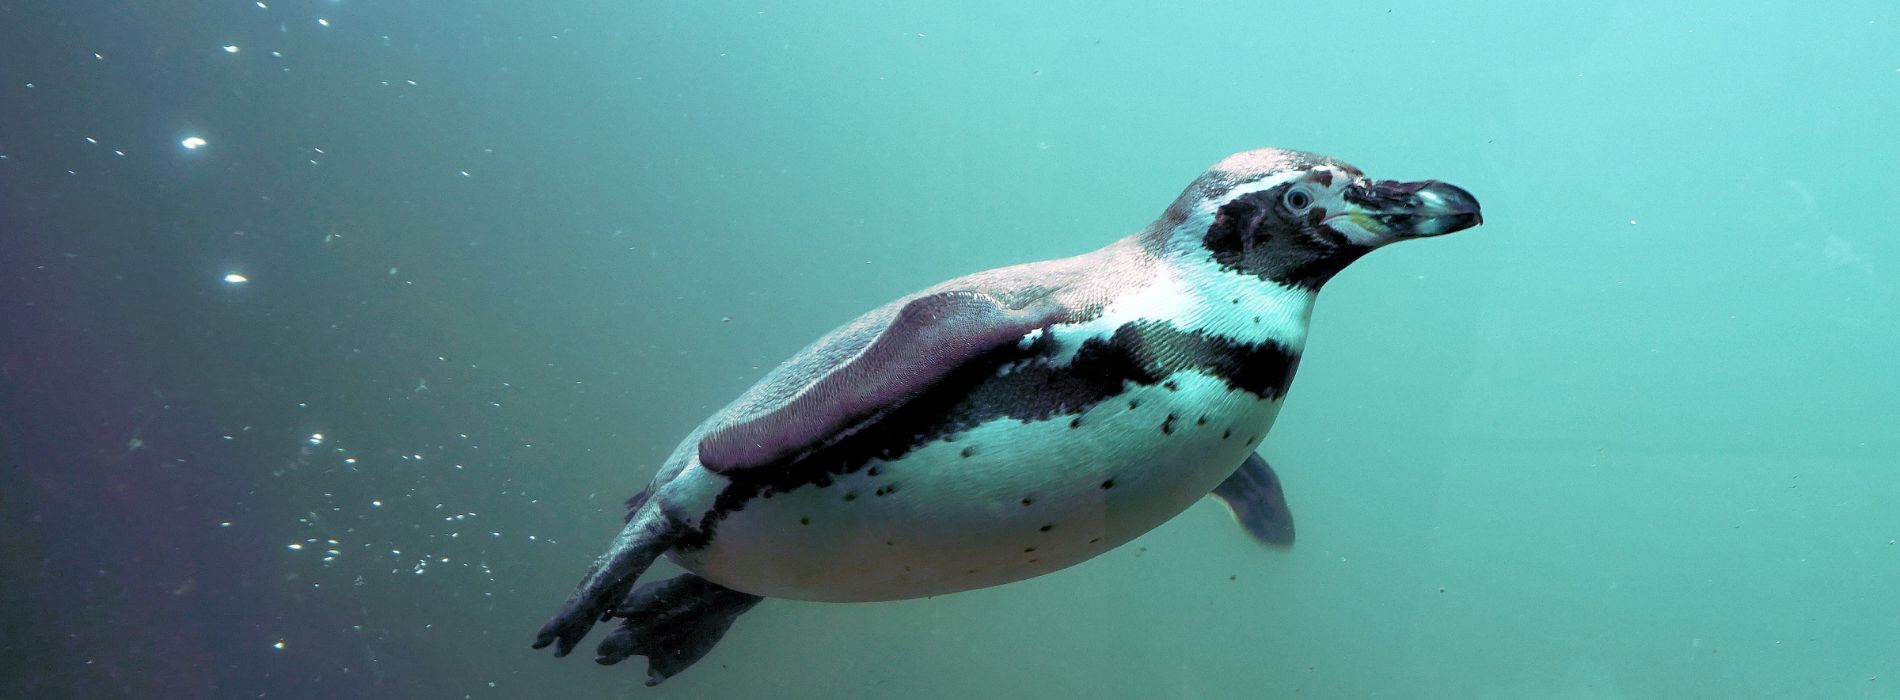 penguin-diving-underwater